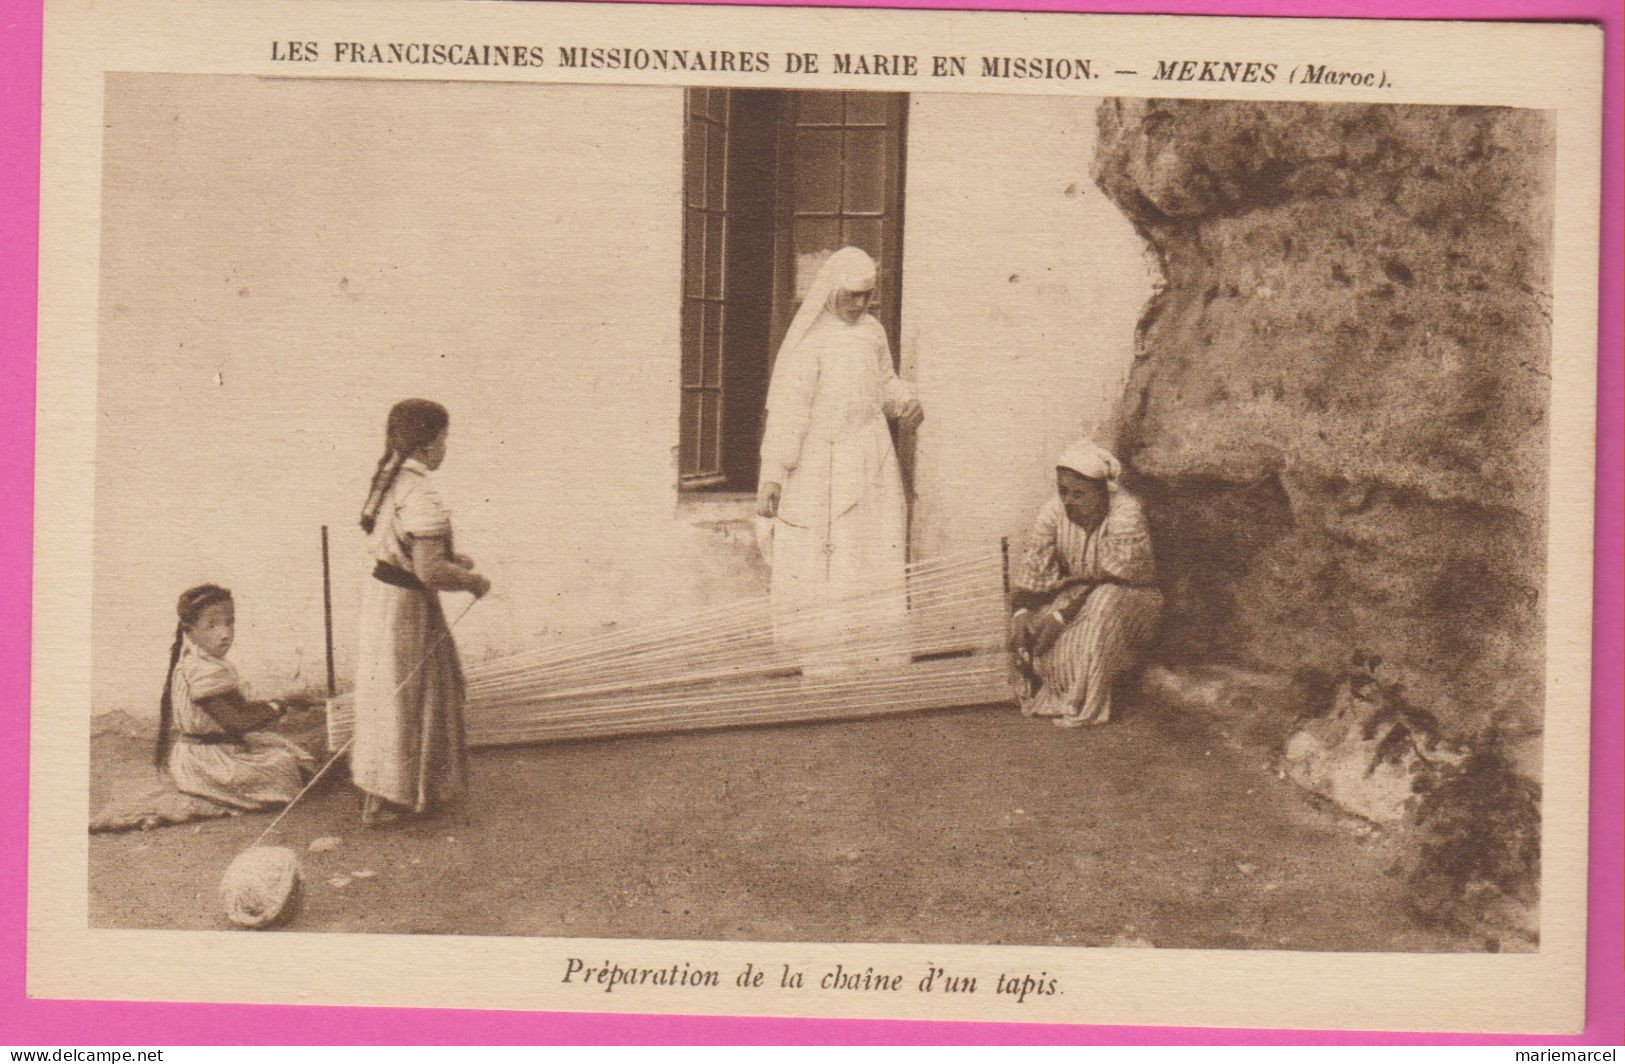 LES FRANCISCAINES MISSIONNAIRES DE MARIE EN MISSION - Lot de 17 Cartes - détail dans la description